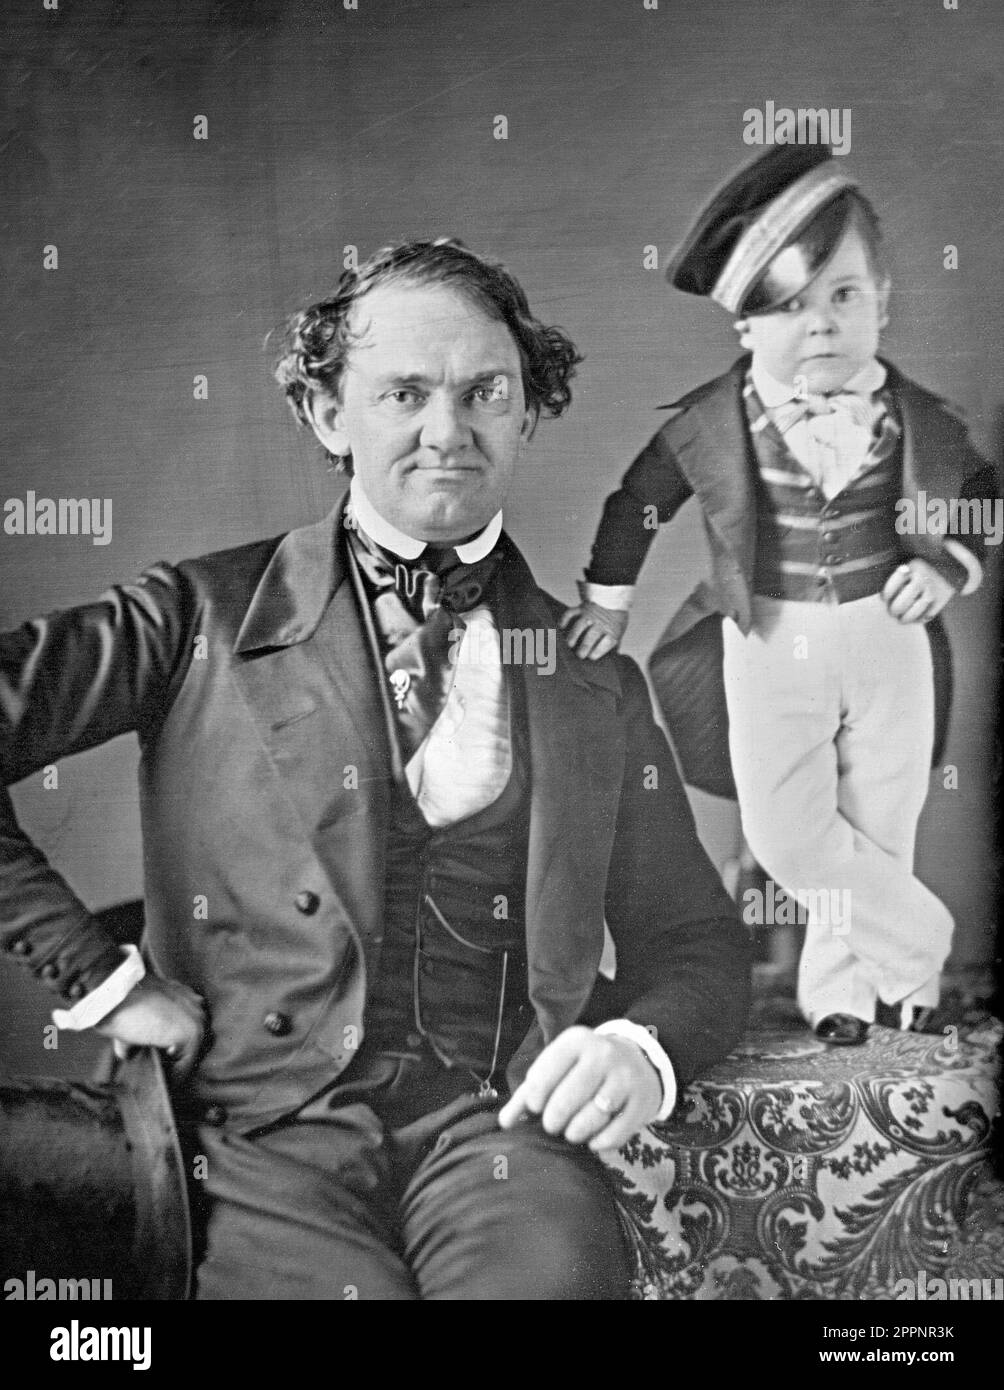 P.T. Barnum und General Tom Thumb. Porträt von Phineas Taylor "P. T." Barnum (1810-1891), einem amerikanischen Politiker, Showman und Geschäftsmann zum Gründer des Barnum & Bailey Circus mit General Tom Thumb (Charles Stratton ). Stockfoto